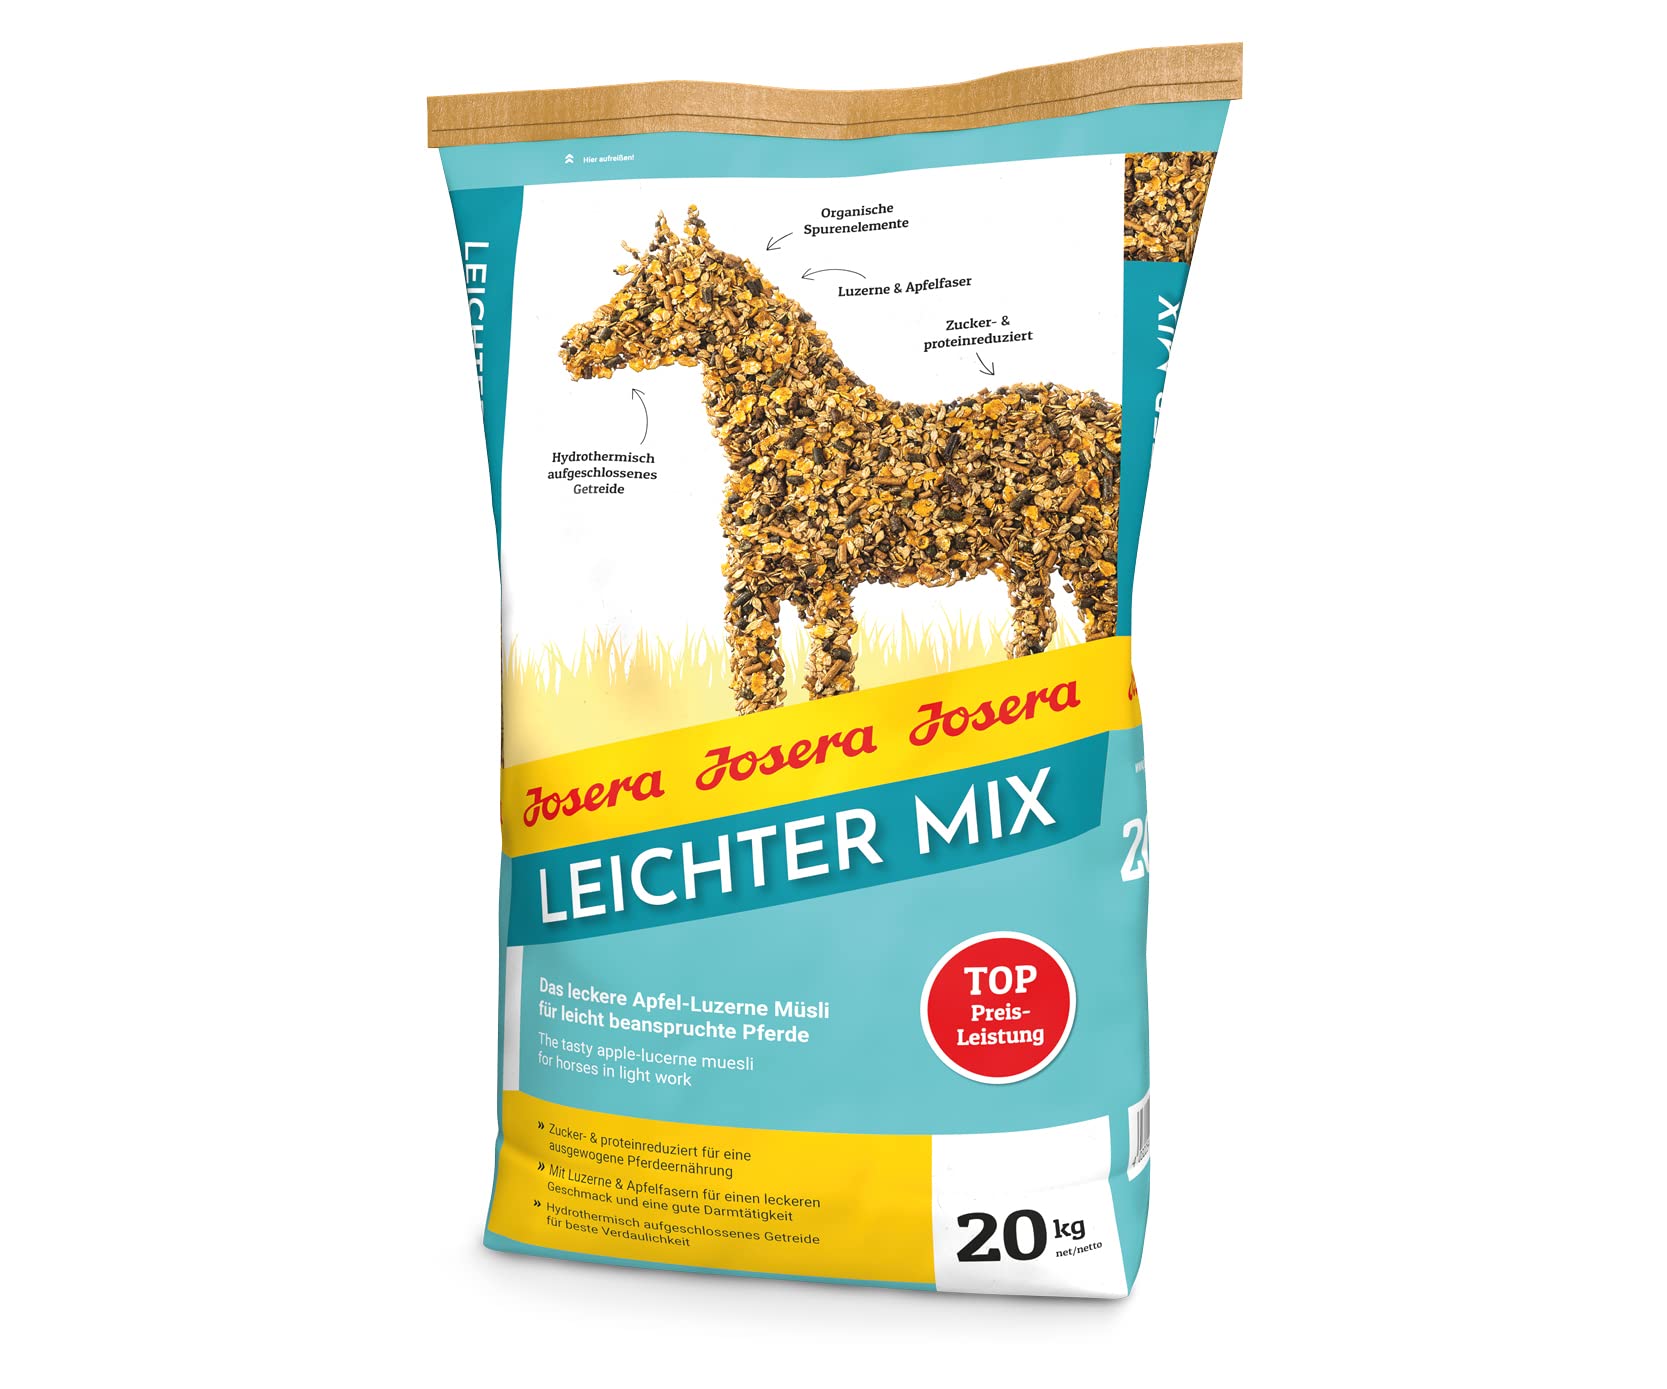 JOSERA Leichter Mix (1 x 20 kg) | Premium Pferdefutter für leicht beanspruchte Pferde | Pferdefutter light | Zucker- & proteinreduziert |Apfel-Luzerne Müsli | 1er Pack